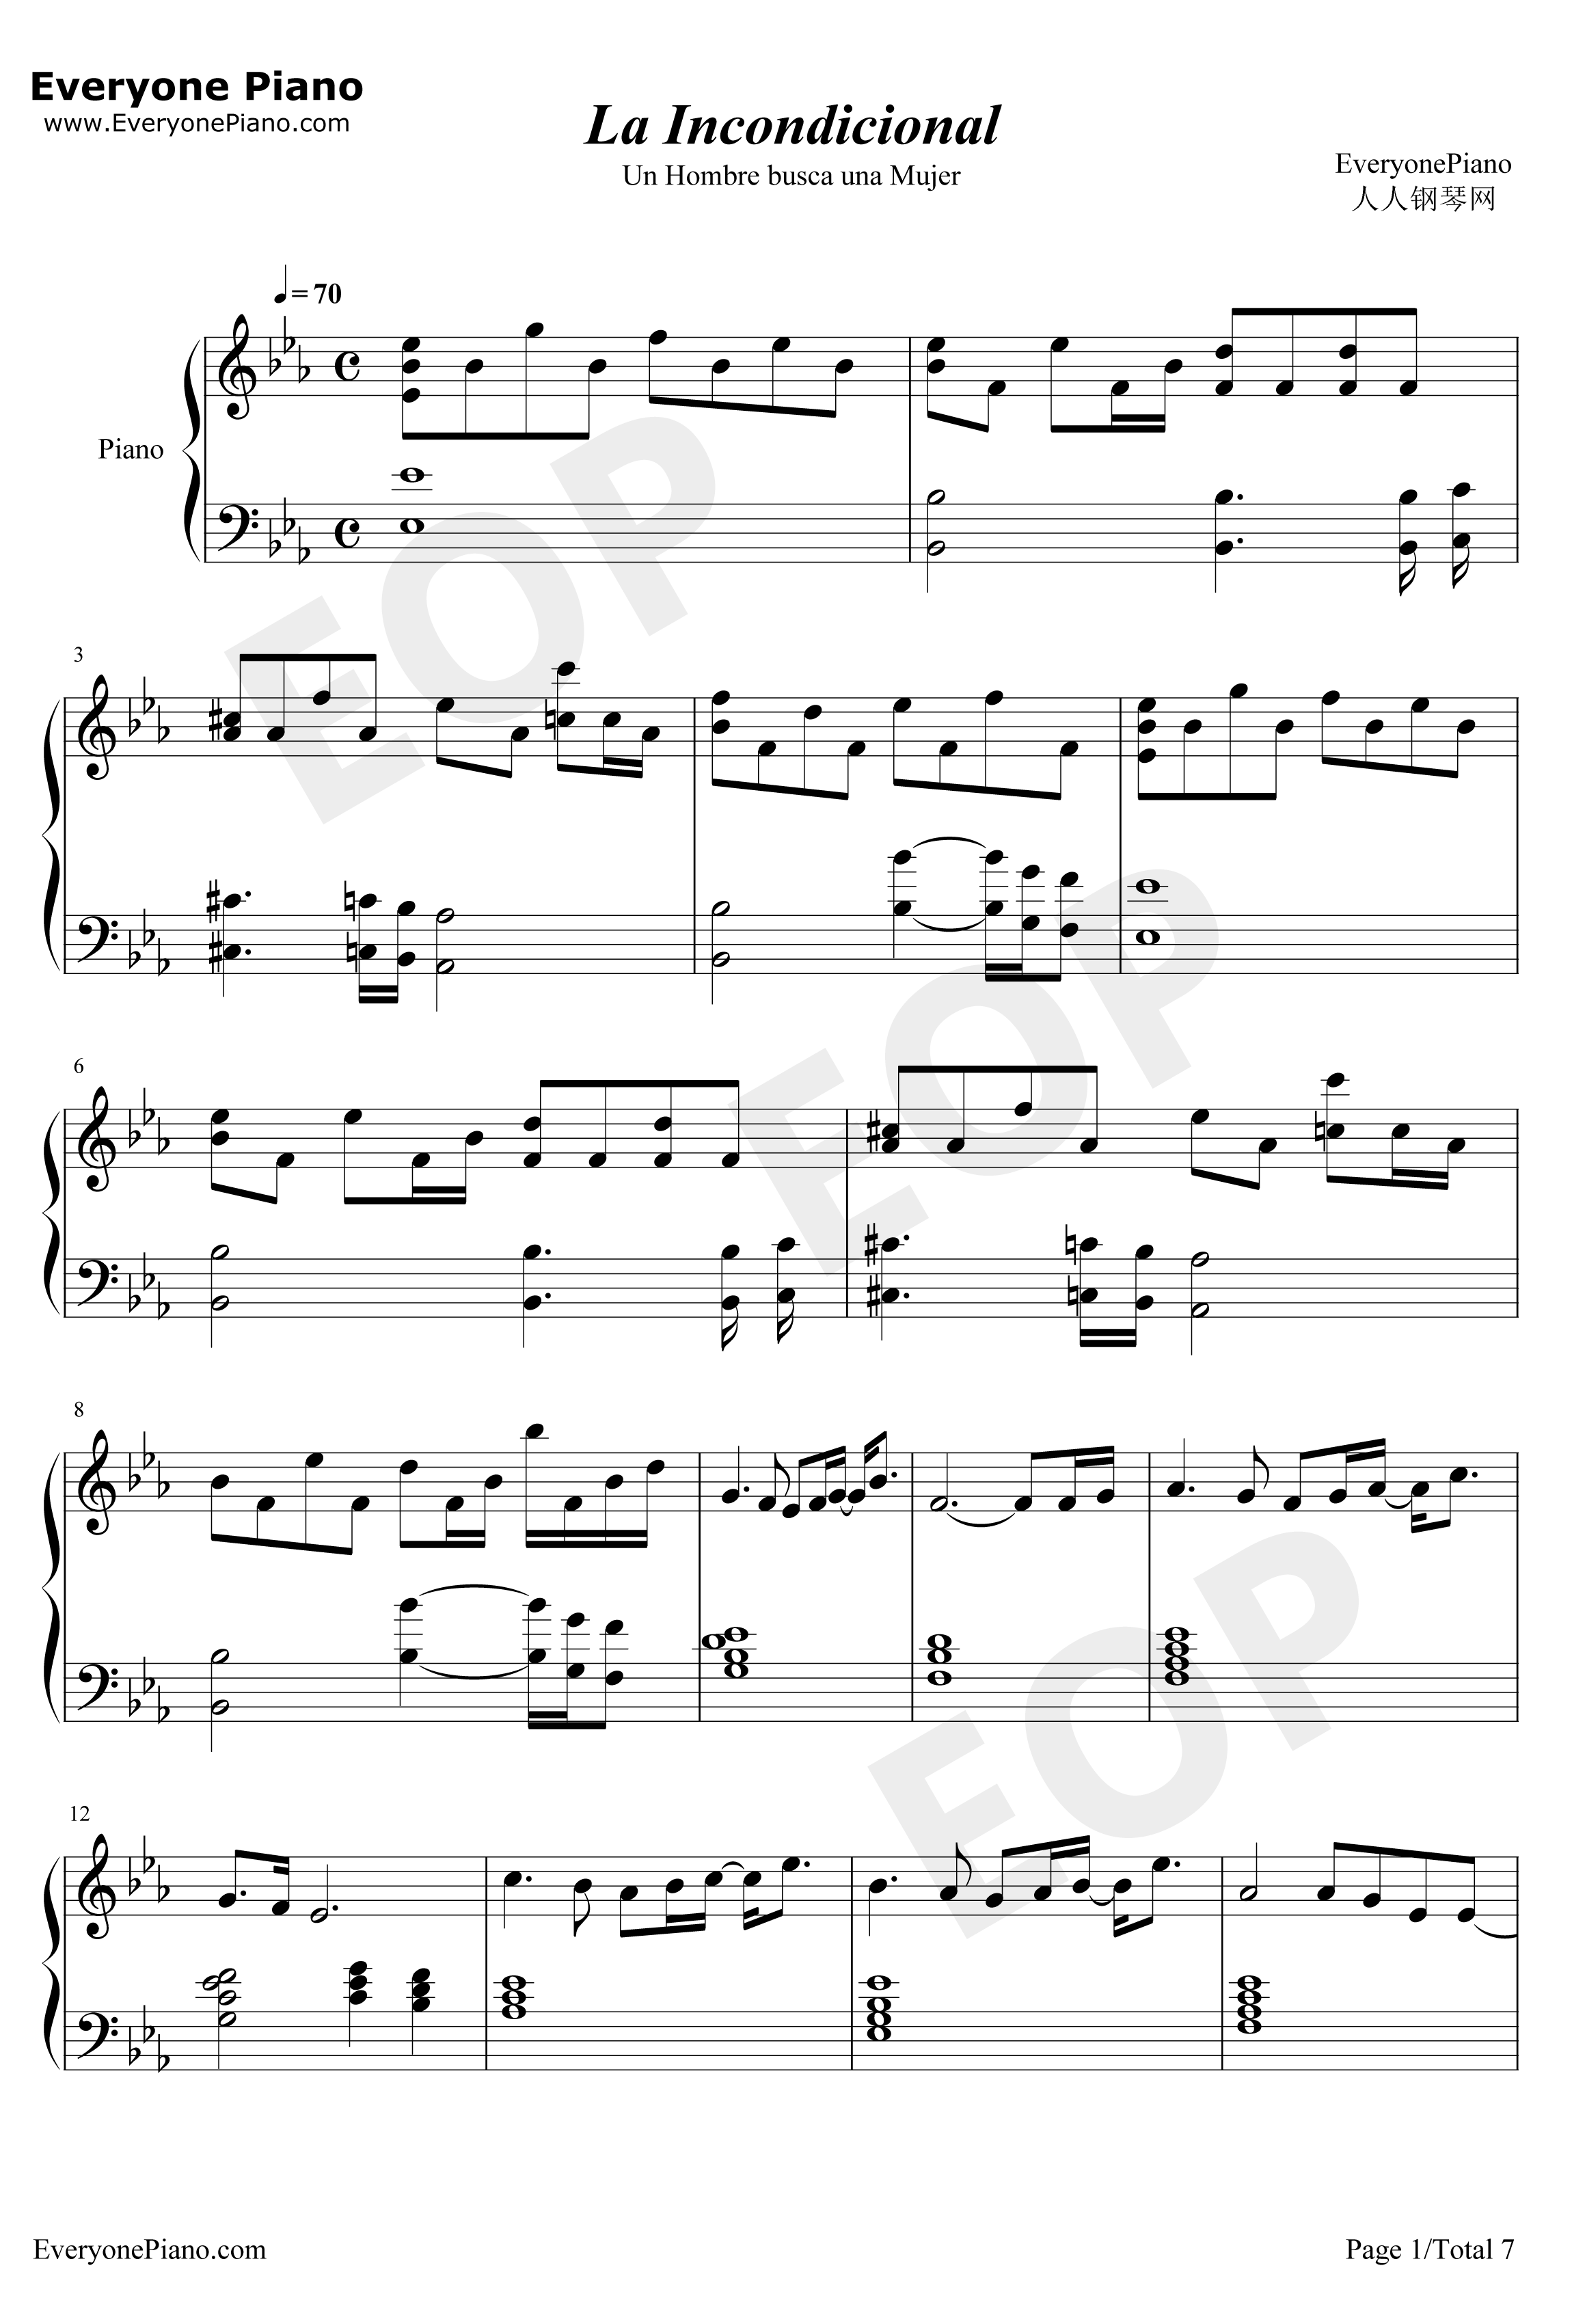 La Incondicional钢琴谱-LuisMiguel1